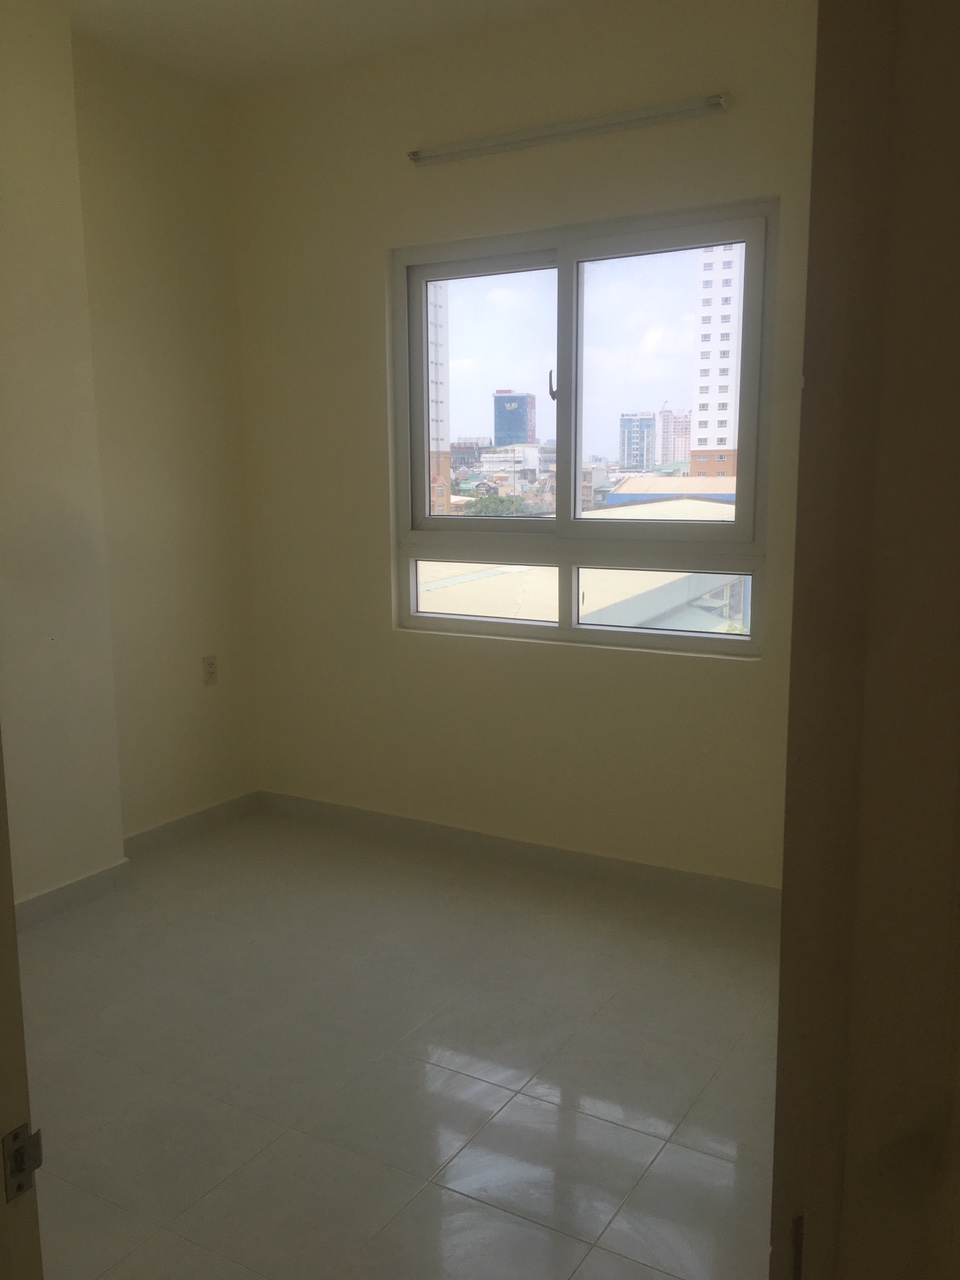 Cho thuê căn hộ 8x Thái An, nhà mới 60m2, 2PN, 2WC, có 1 số nội thất, giá: 7.5tr/tháng, ở ngay